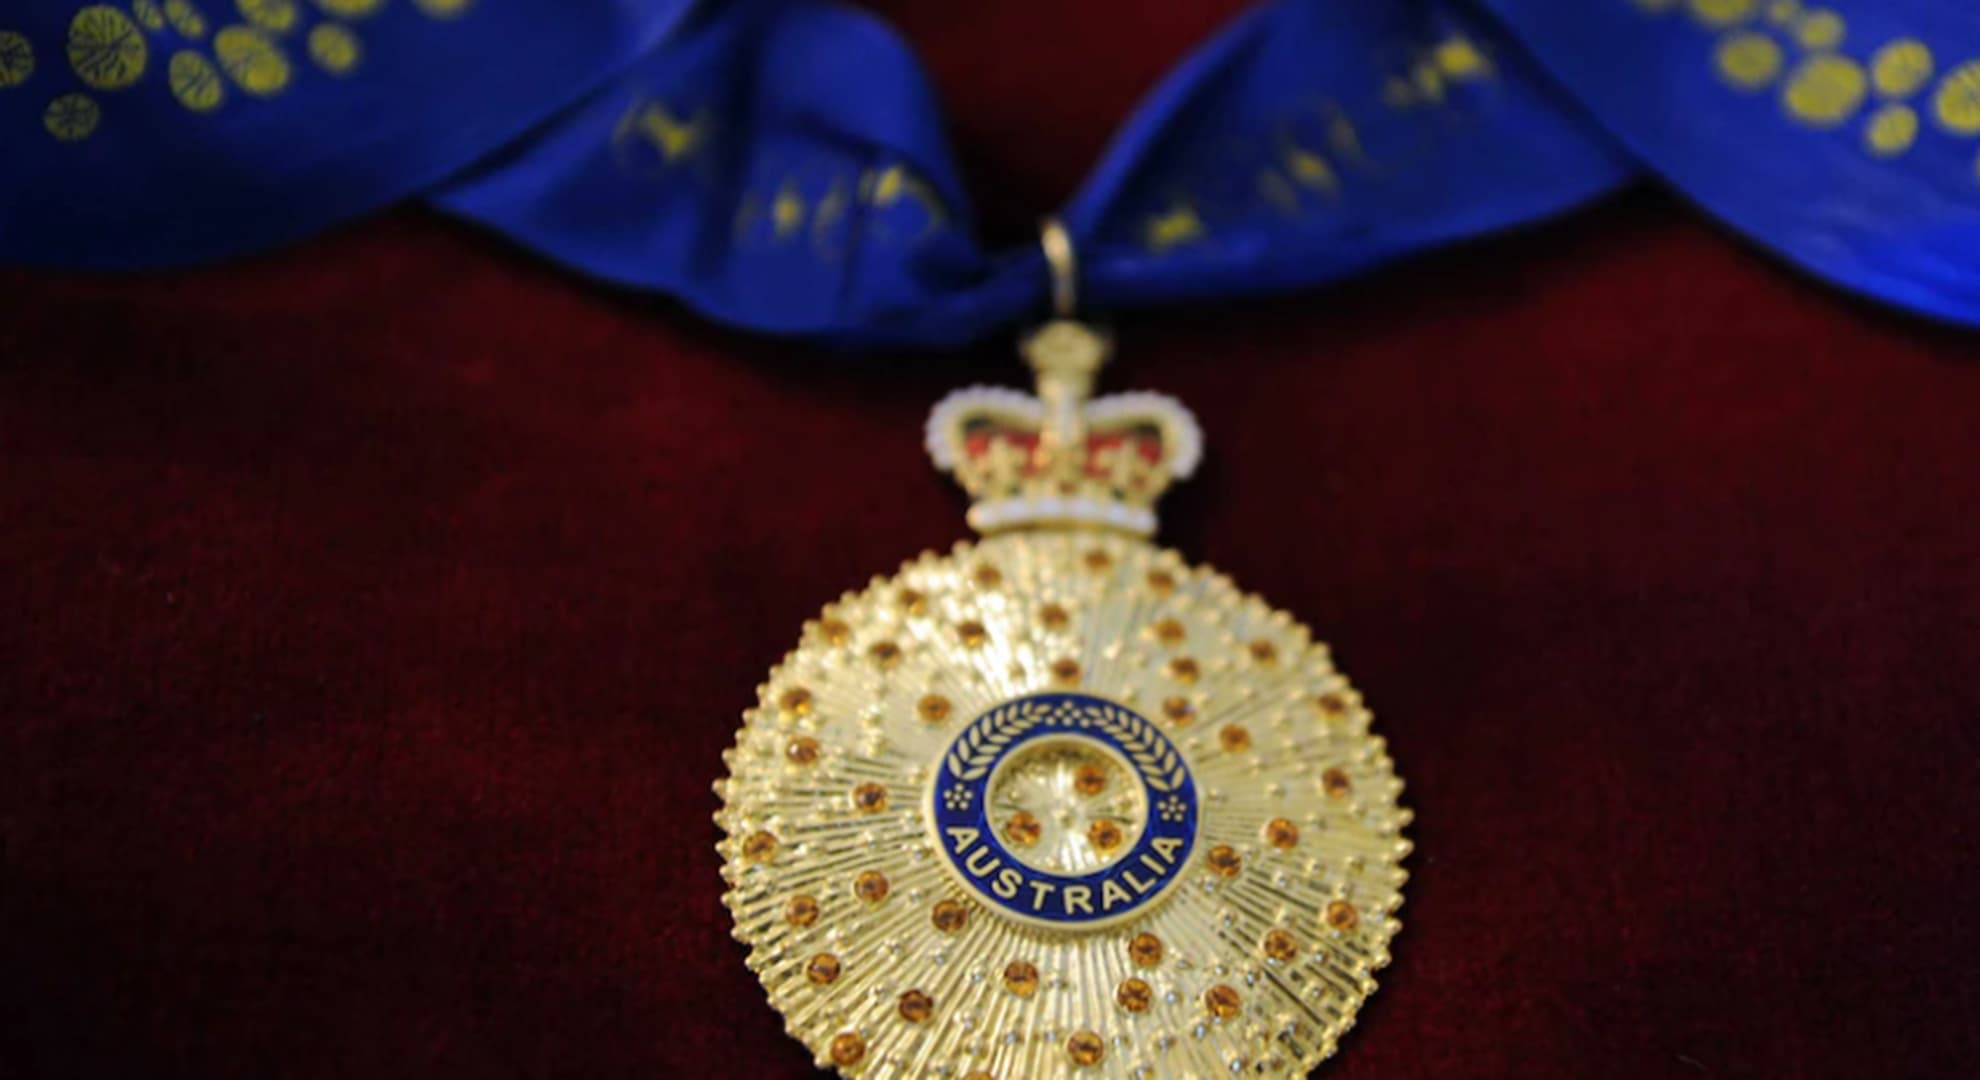 Australia Day Honours medal on red velvet